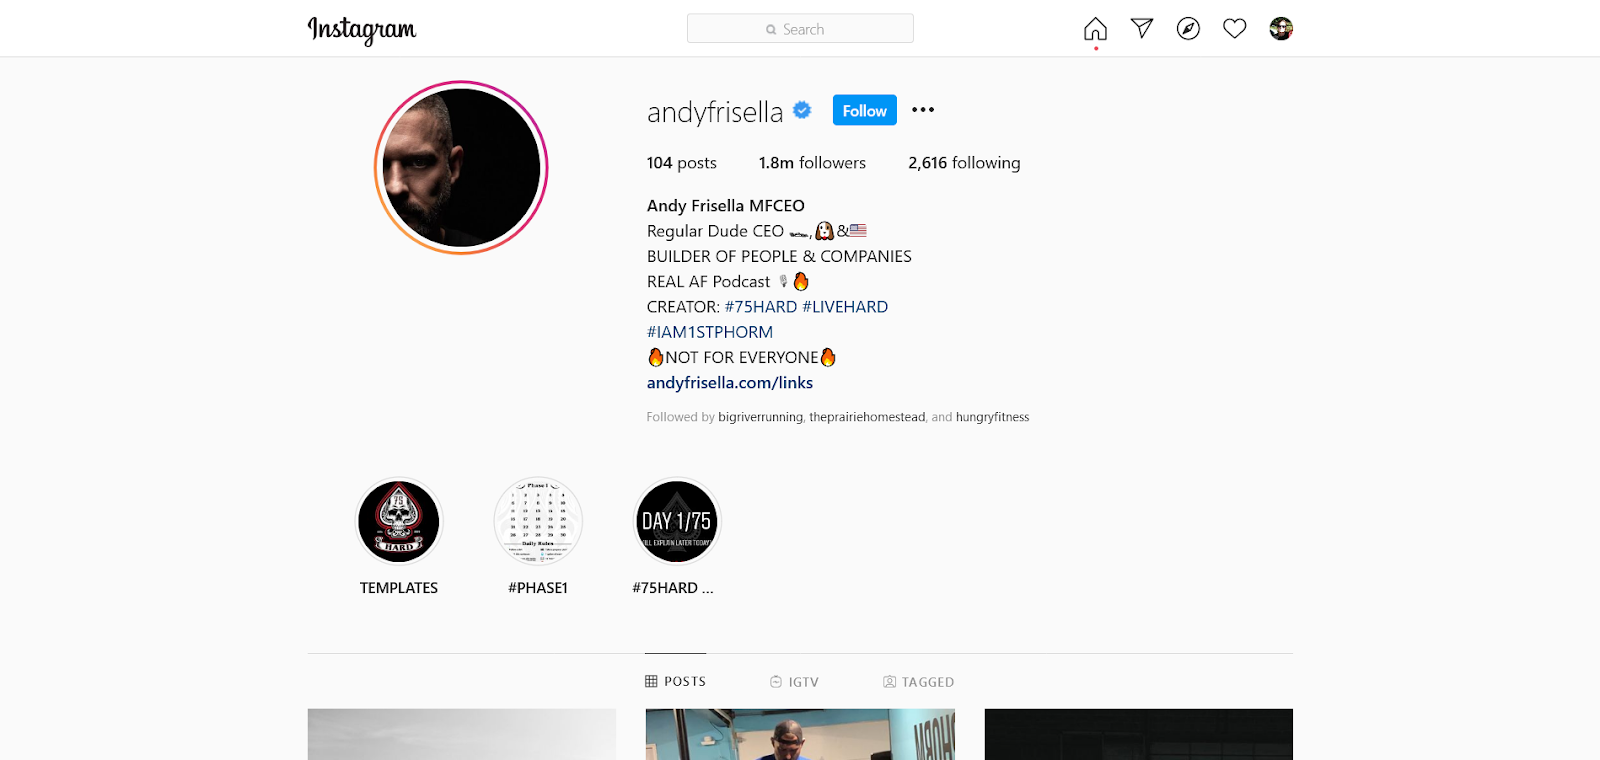 حساب Andy Frisella على Instagram يستخدم الهاشتاجات في السيرة الذاتية